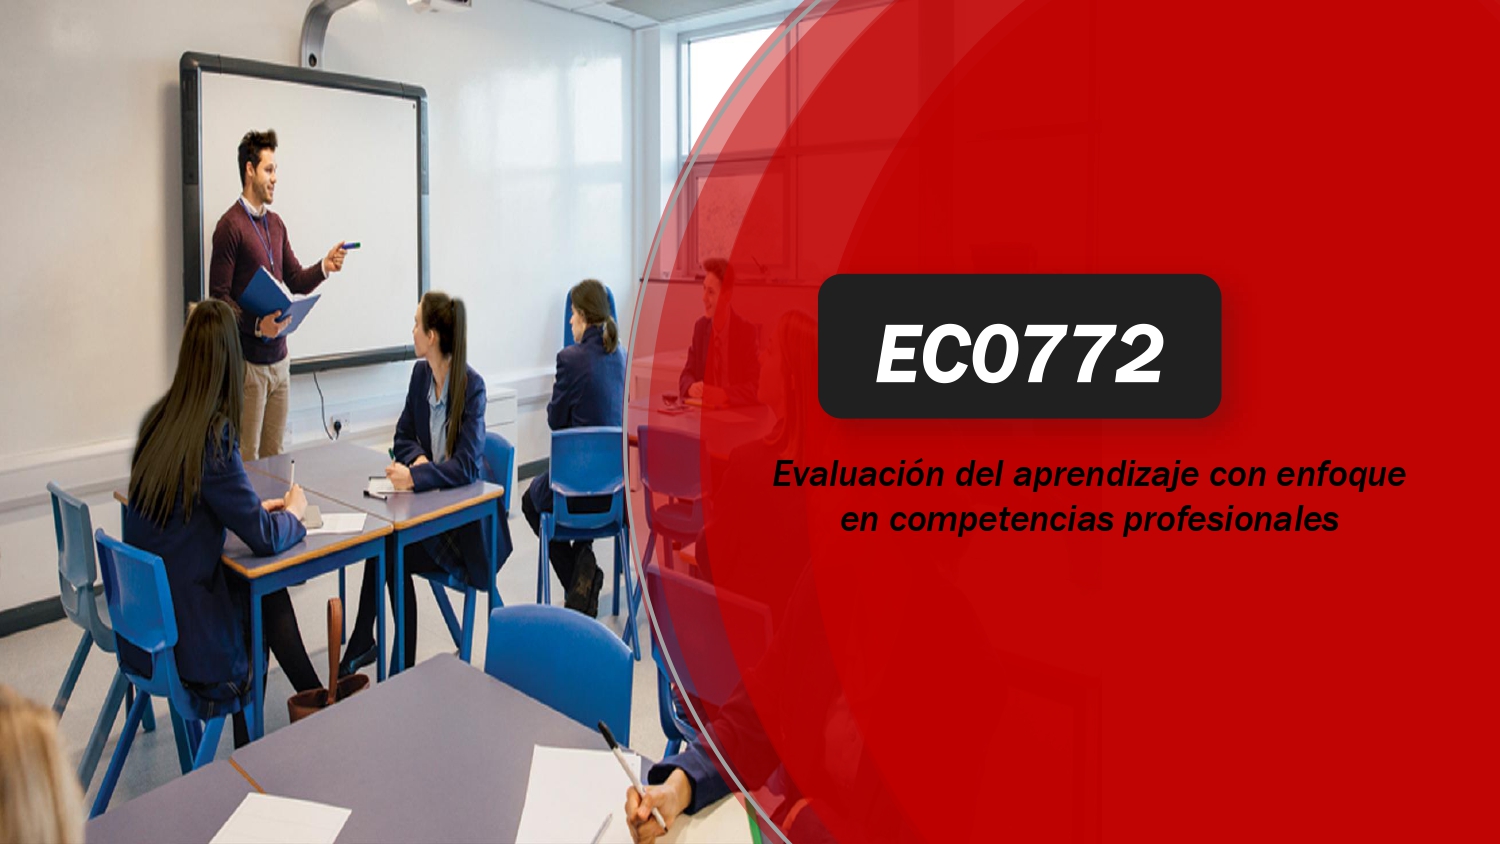 EC0772 Evaluación del aprendizaje con enfoque en competencias profesionales